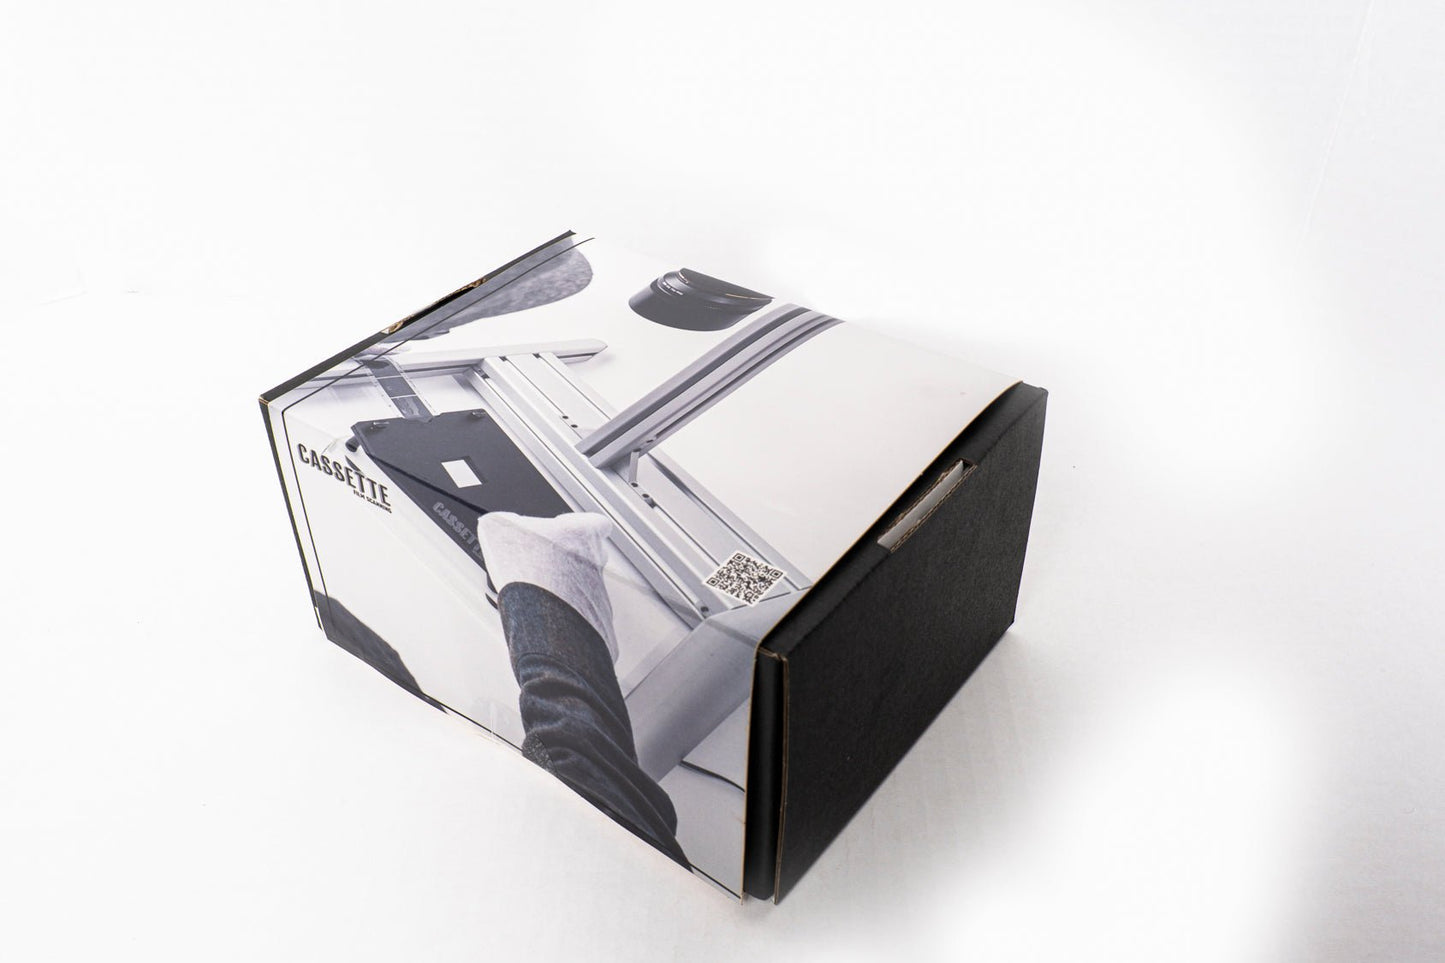 4X5 Film Holder For DSLR Scanning Kit